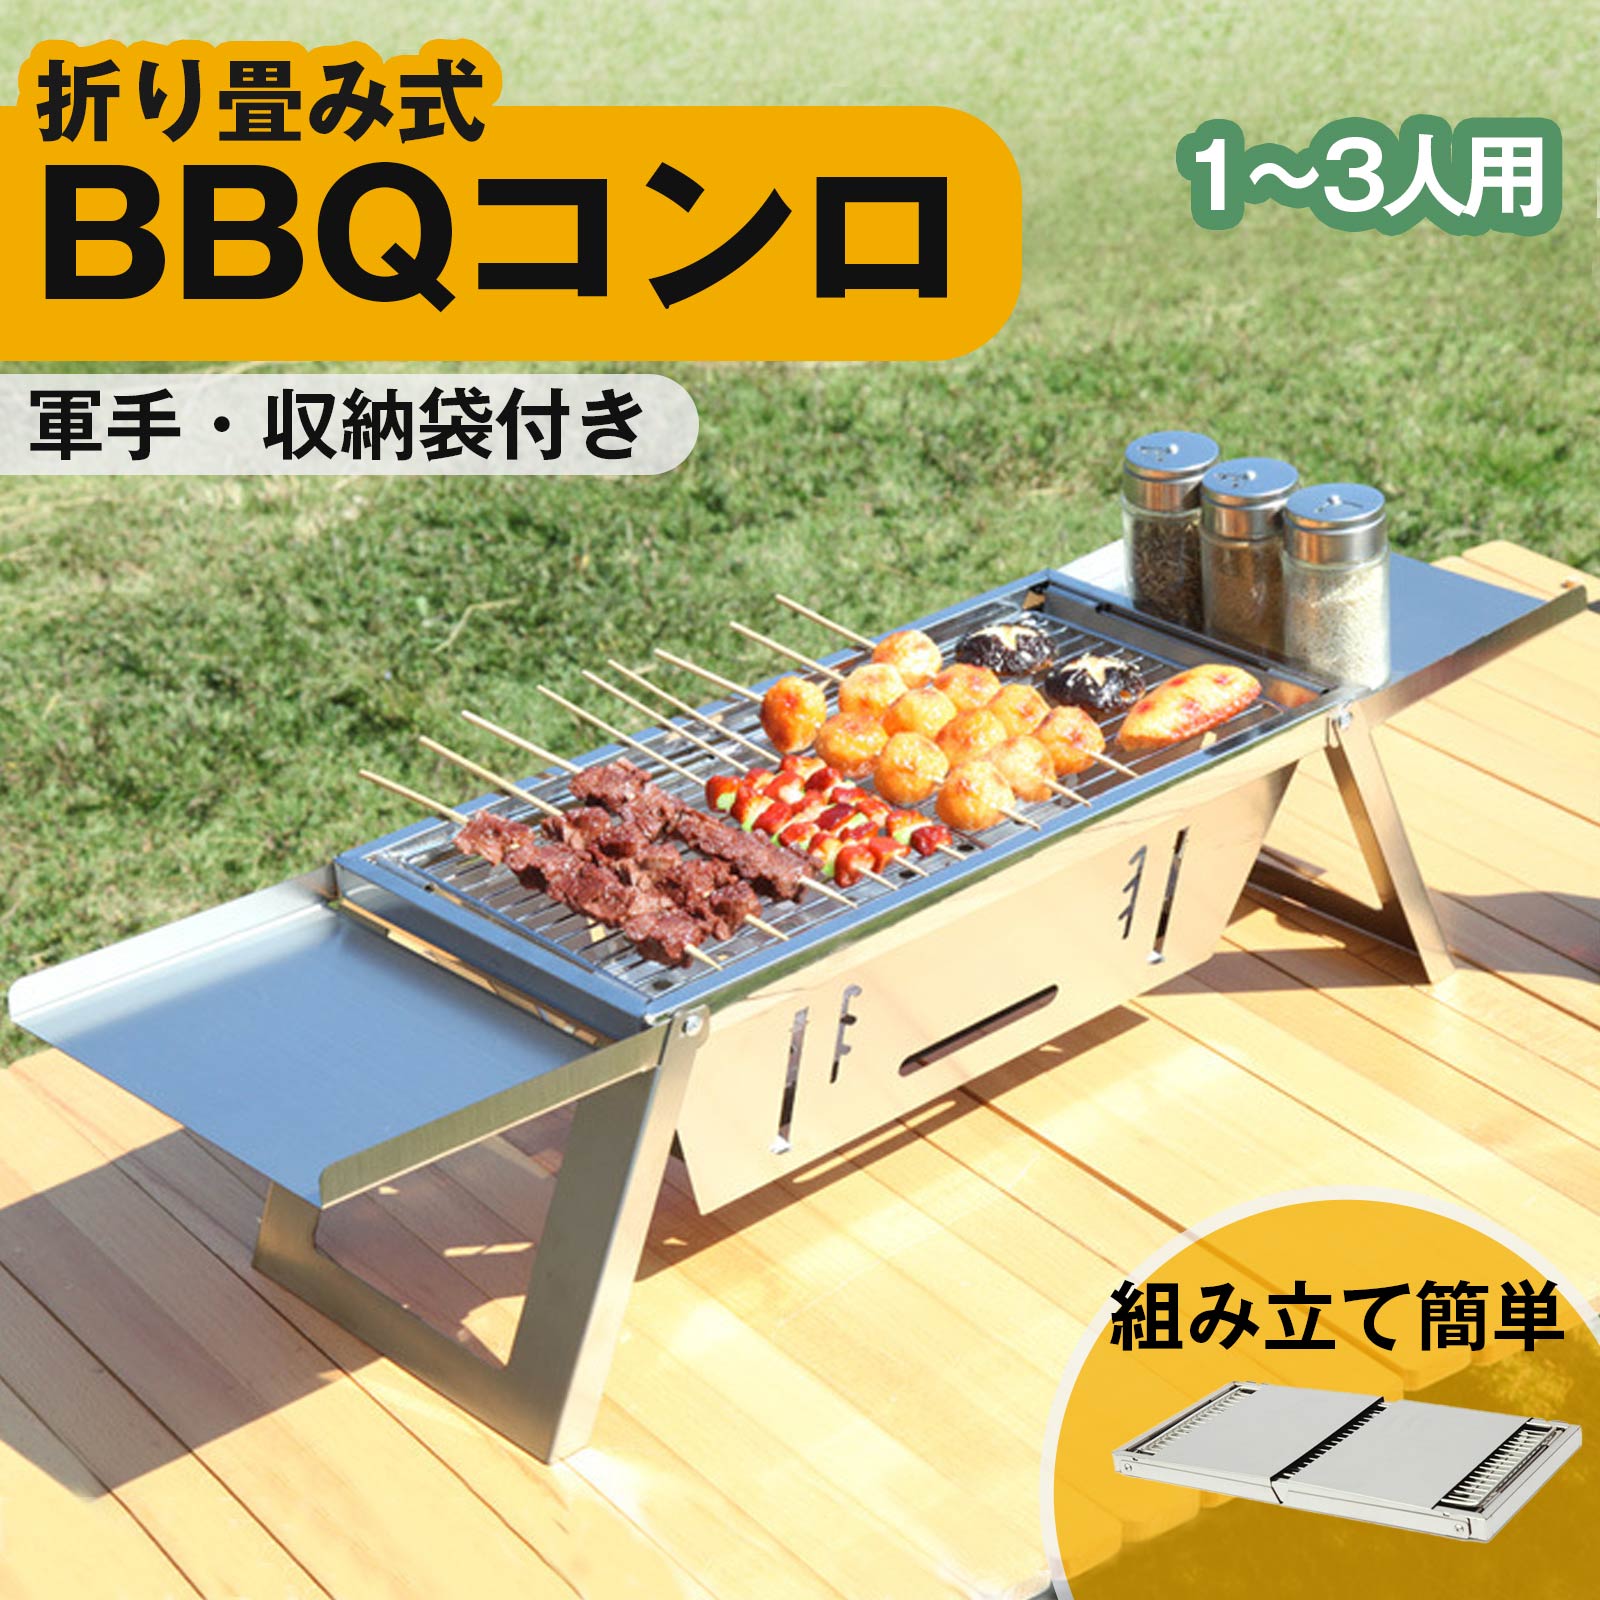 バーベキューコンロ 折り畳み式 ステンレス 2〜4人用 47.5cm×34cm BBQ 